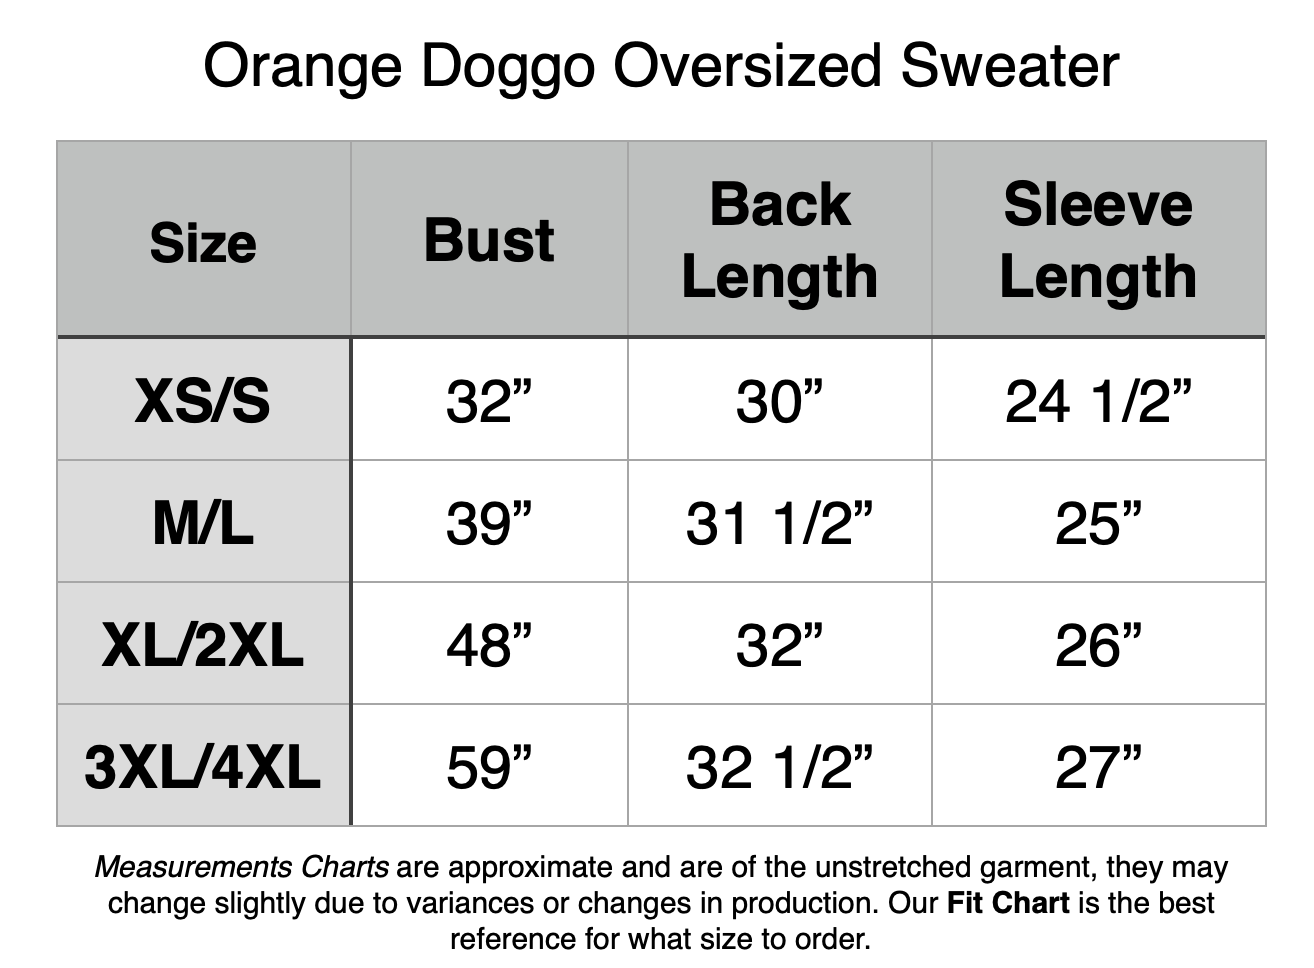 Orange Doggo Oversized Sweater: XS/S - 32" Bust, 30" Back Length, 24.5" Sleeve Length. M/L - 39" Bust, 31.5" Back Length, 25" Sleeve Length. XL/2XL - 48" Bust, 32" Back Length, 26" Sleeve Length. 3XL/4XL - 59" Bust, 32.5" Back Length, 27" Sleeve Length.